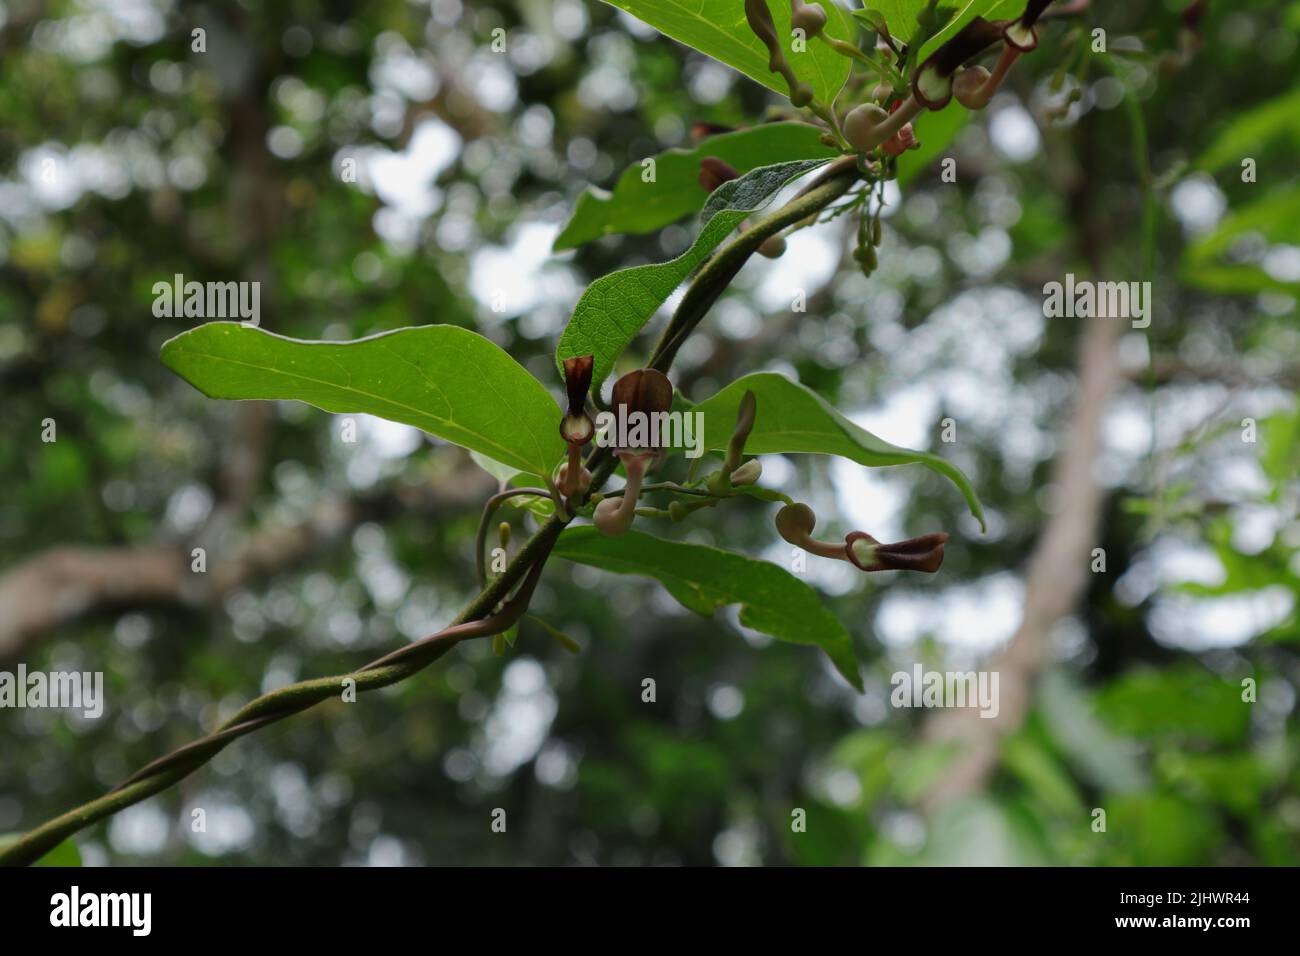 Niedrige Ansicht von kleinen Blumen und Knospen mit Blättern der Aristolochia Indica-Kriechpflanze, die auch in Sri Lanka als „Sapsada“ im Garten bekannt ist Stockfoto